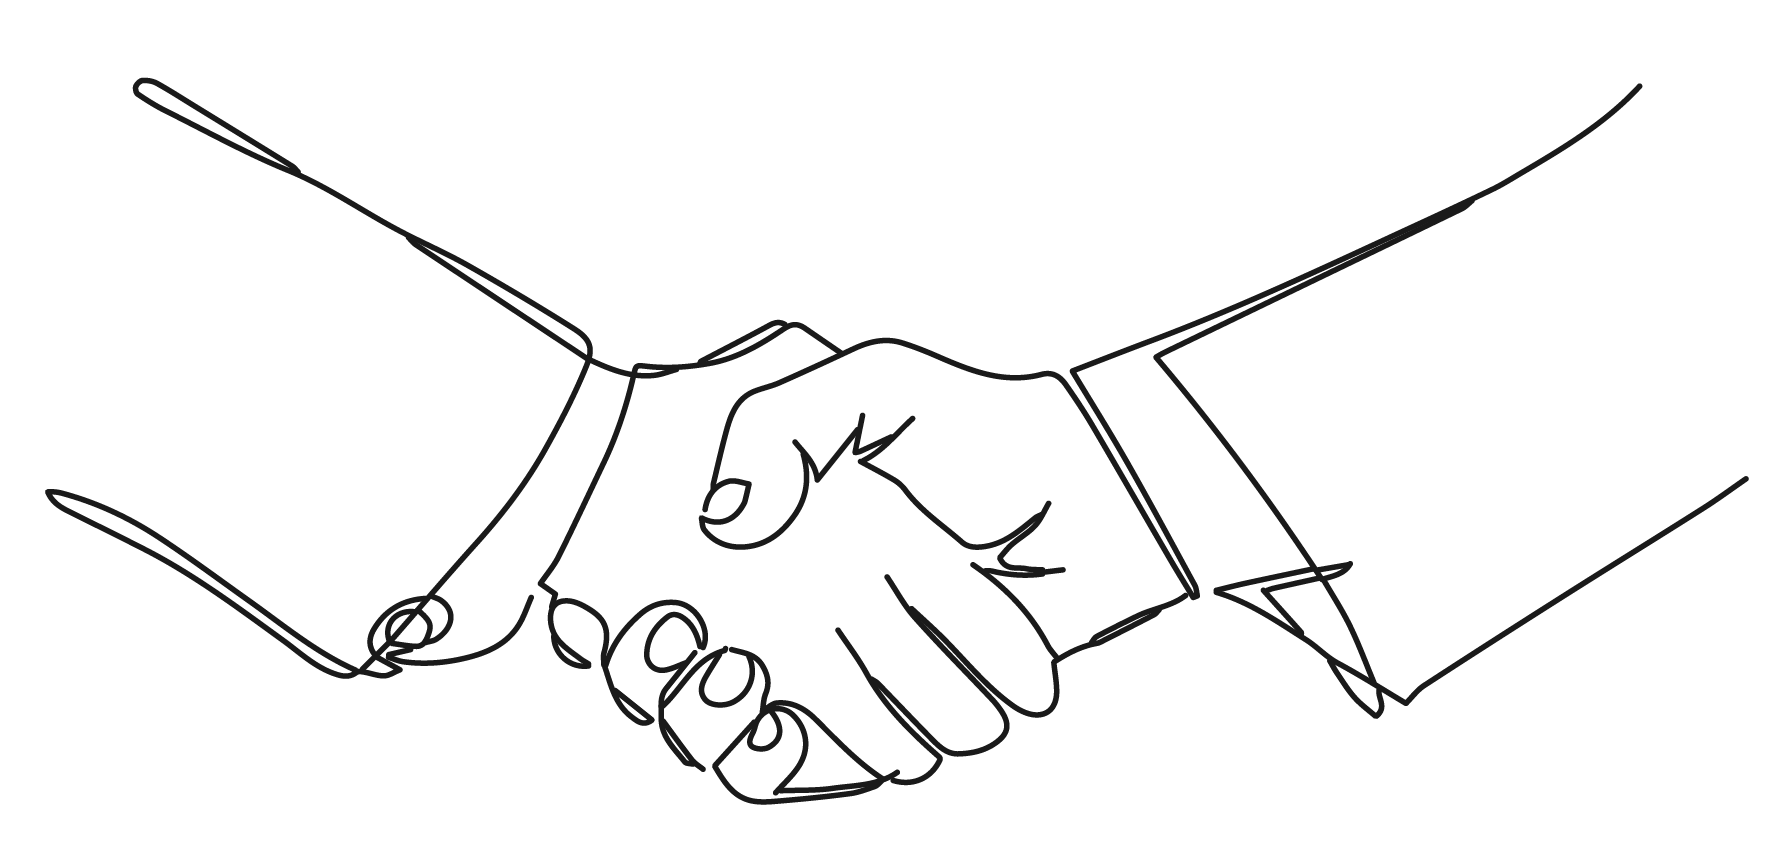 01novamed handshake » bsk